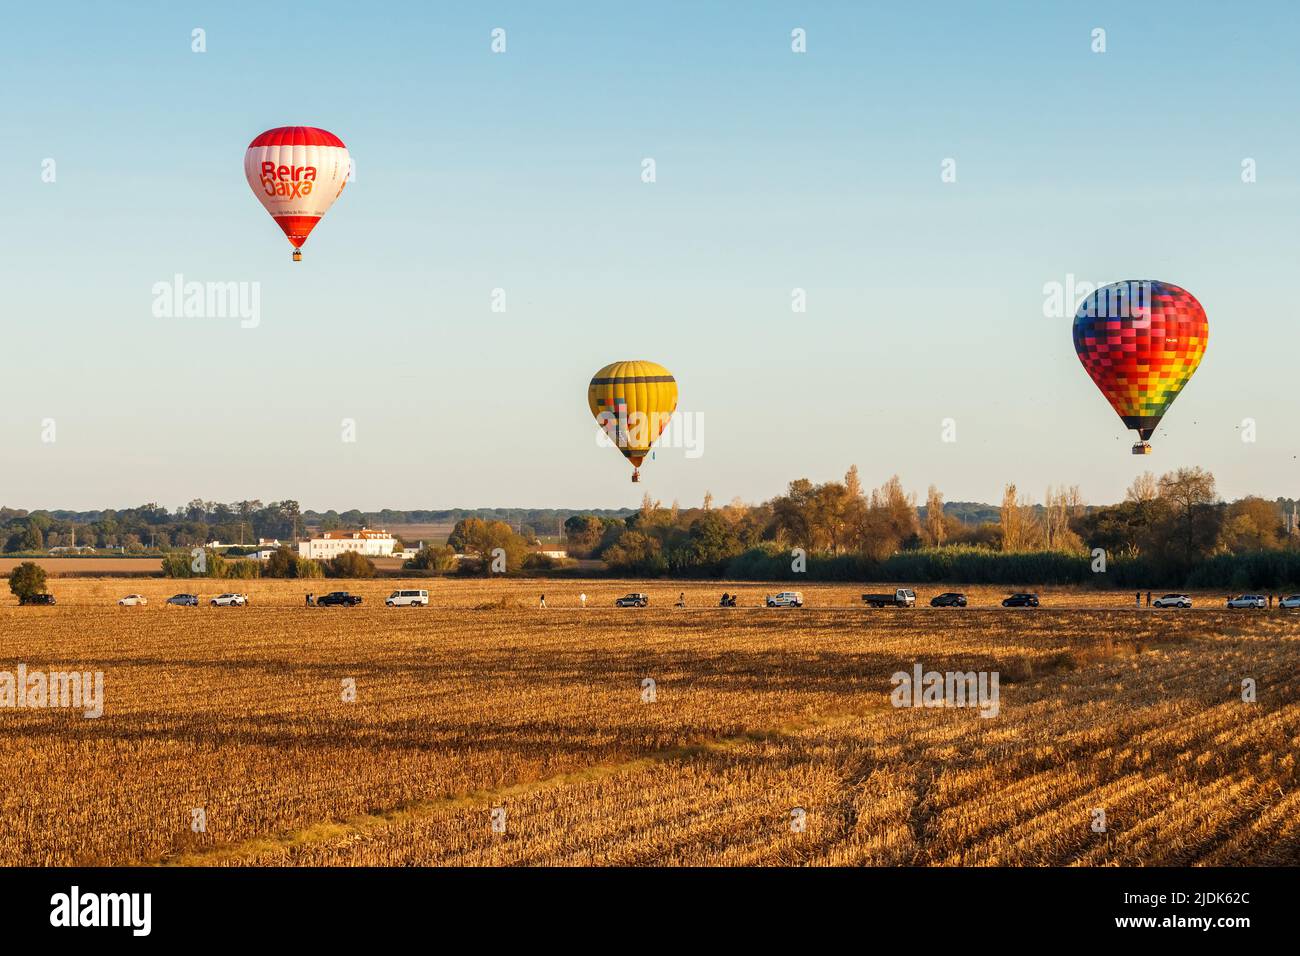 Coruche, Portogallo - 13 novembre 2021: Palloncini ad aria calda che volano sui campi di Coruche, Portogallo, durante il Ballooning Festival. Foto Stock